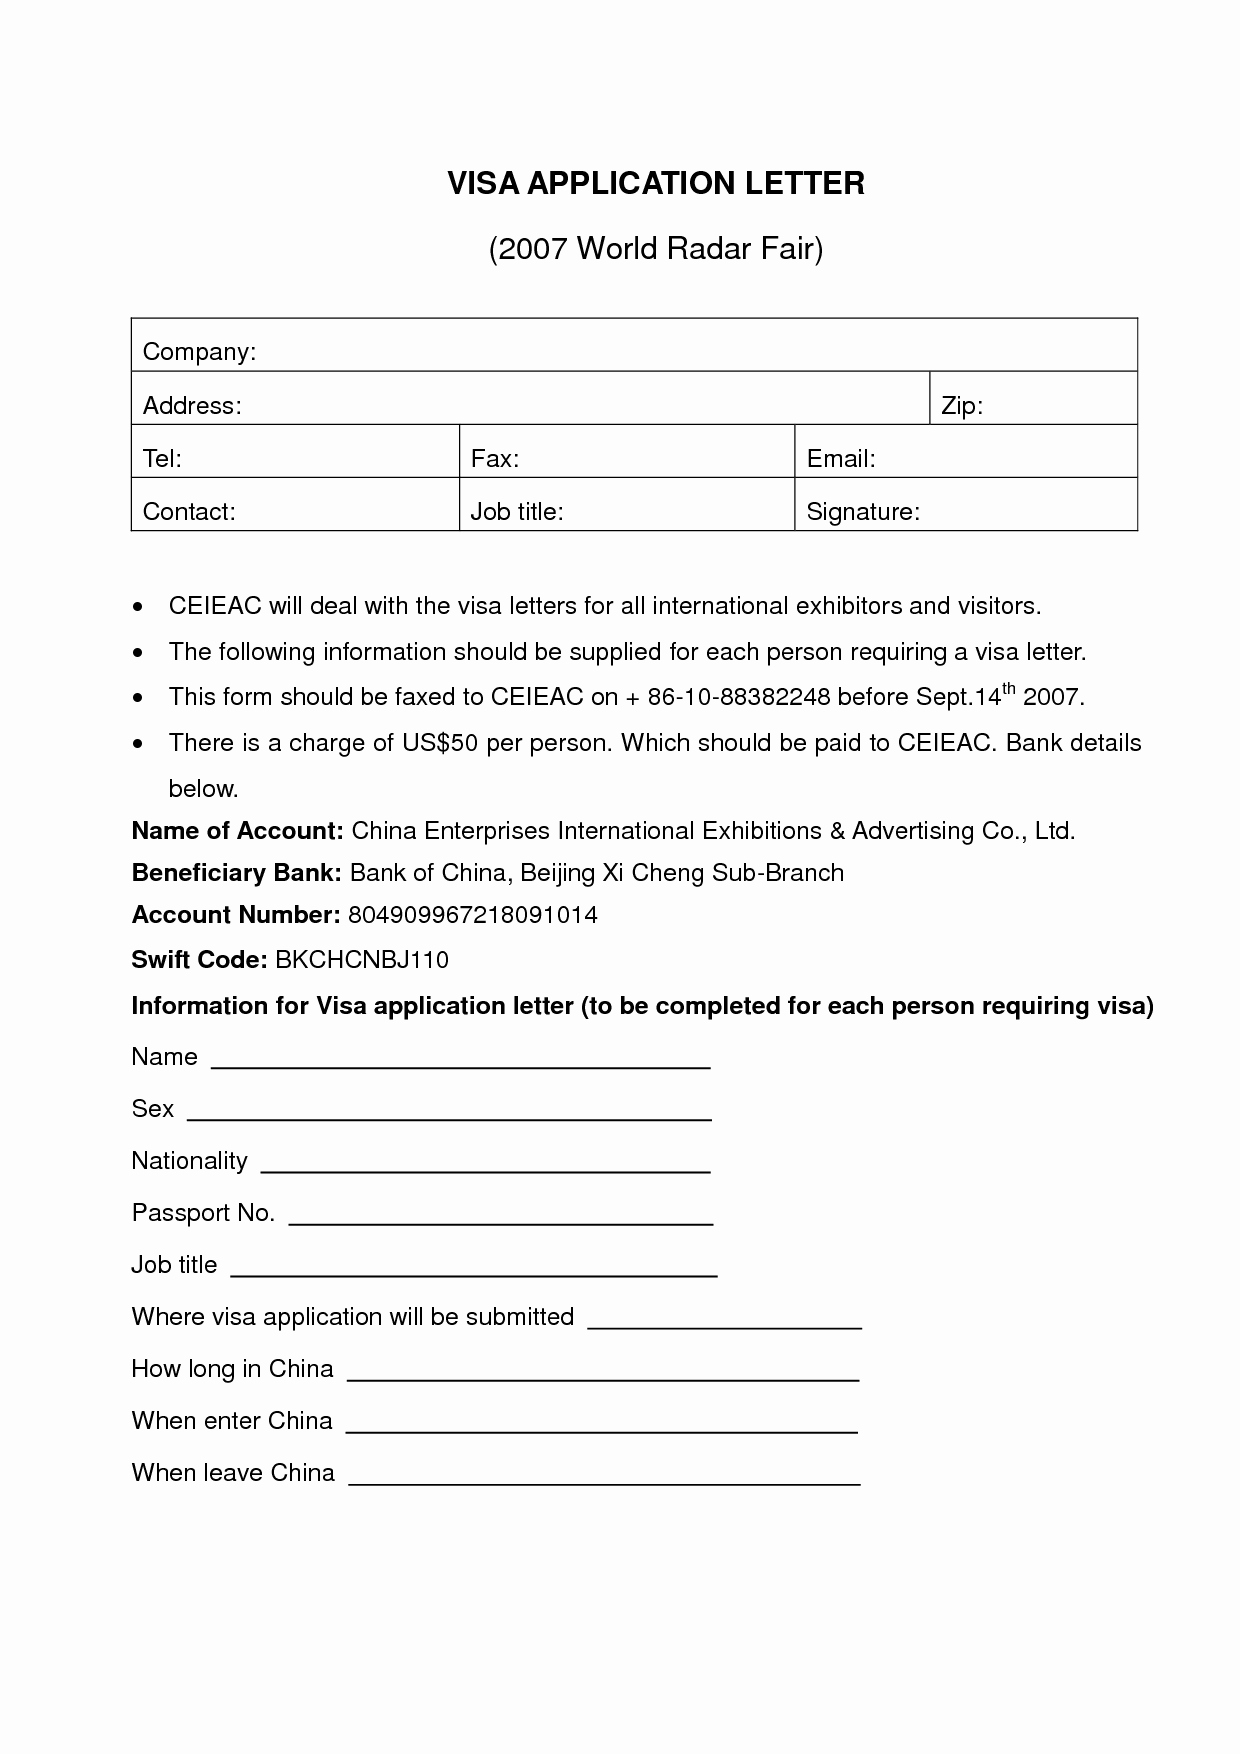 Employment Letter for Visa Application Lovely Letter Employment Visa Application Essay National